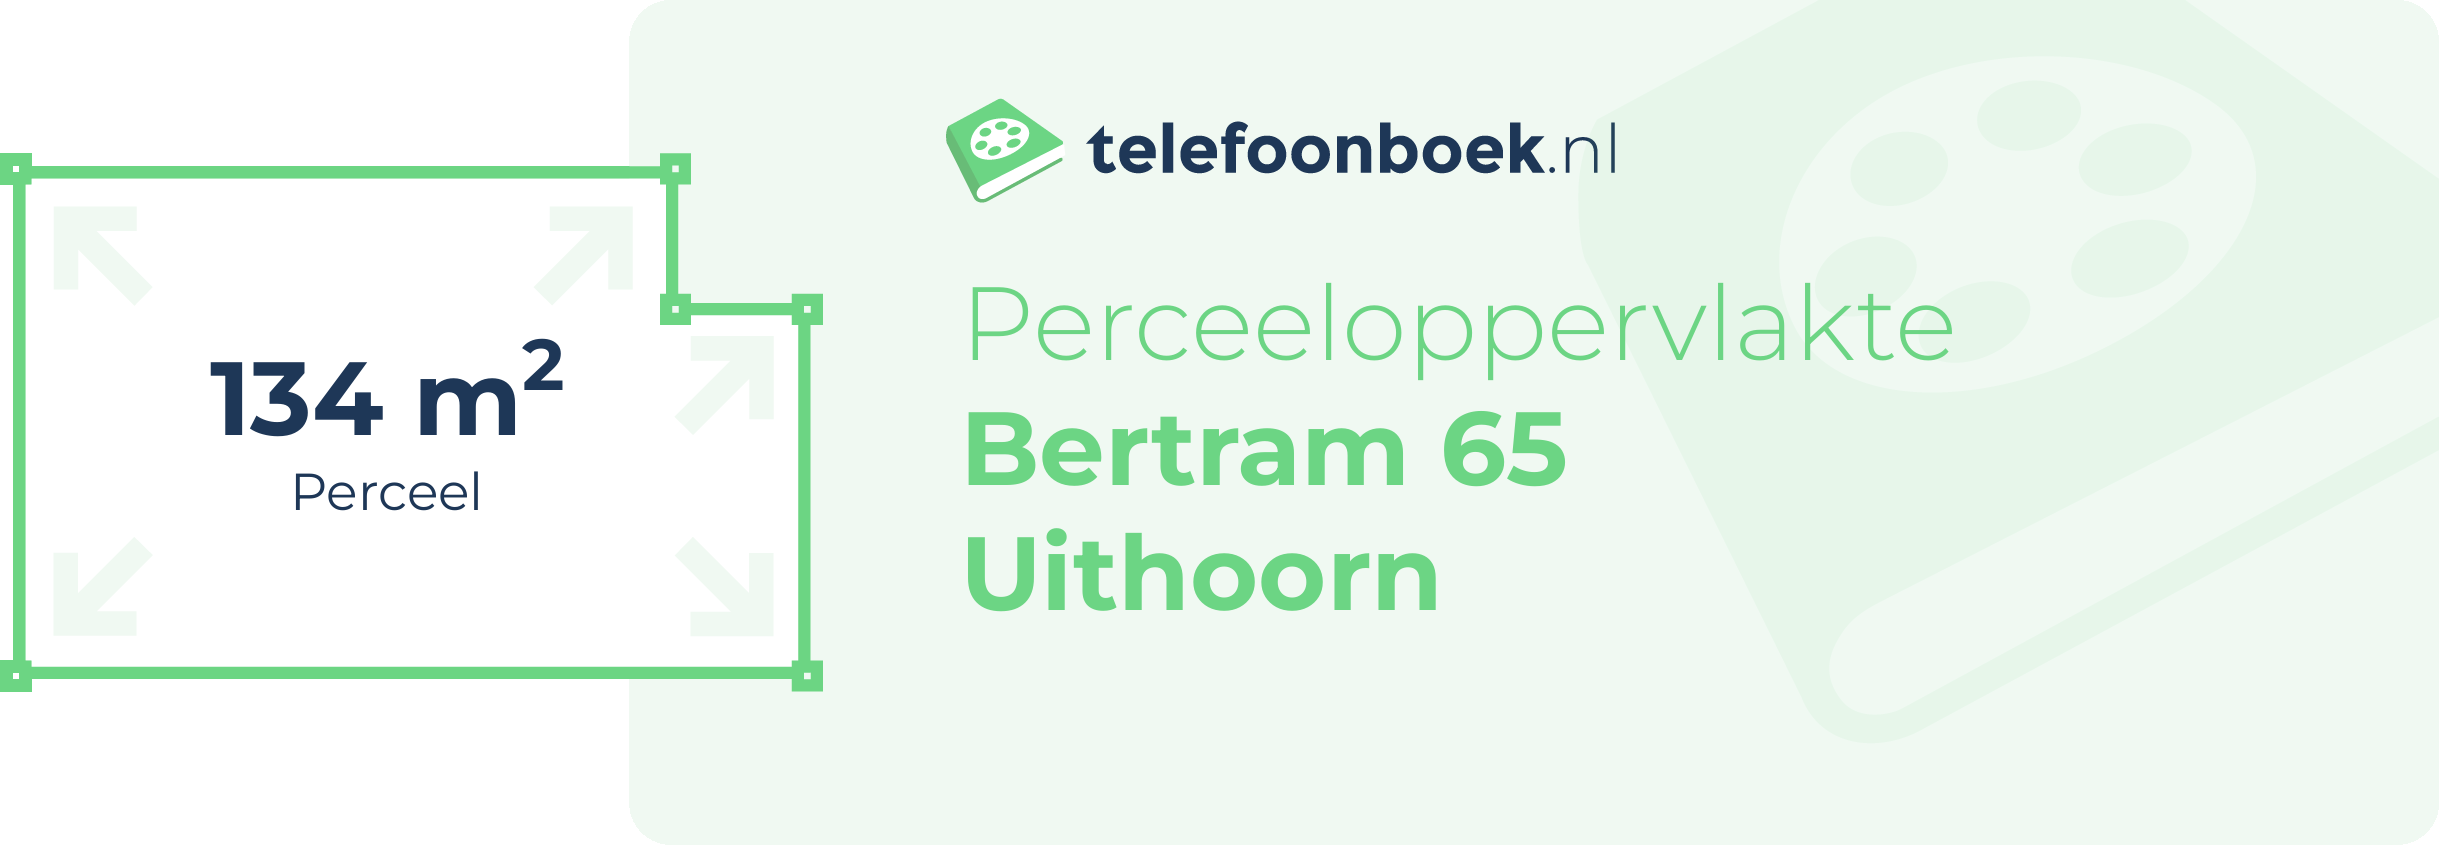 Perceeloppervlakte Bertram 65 Uithoorn